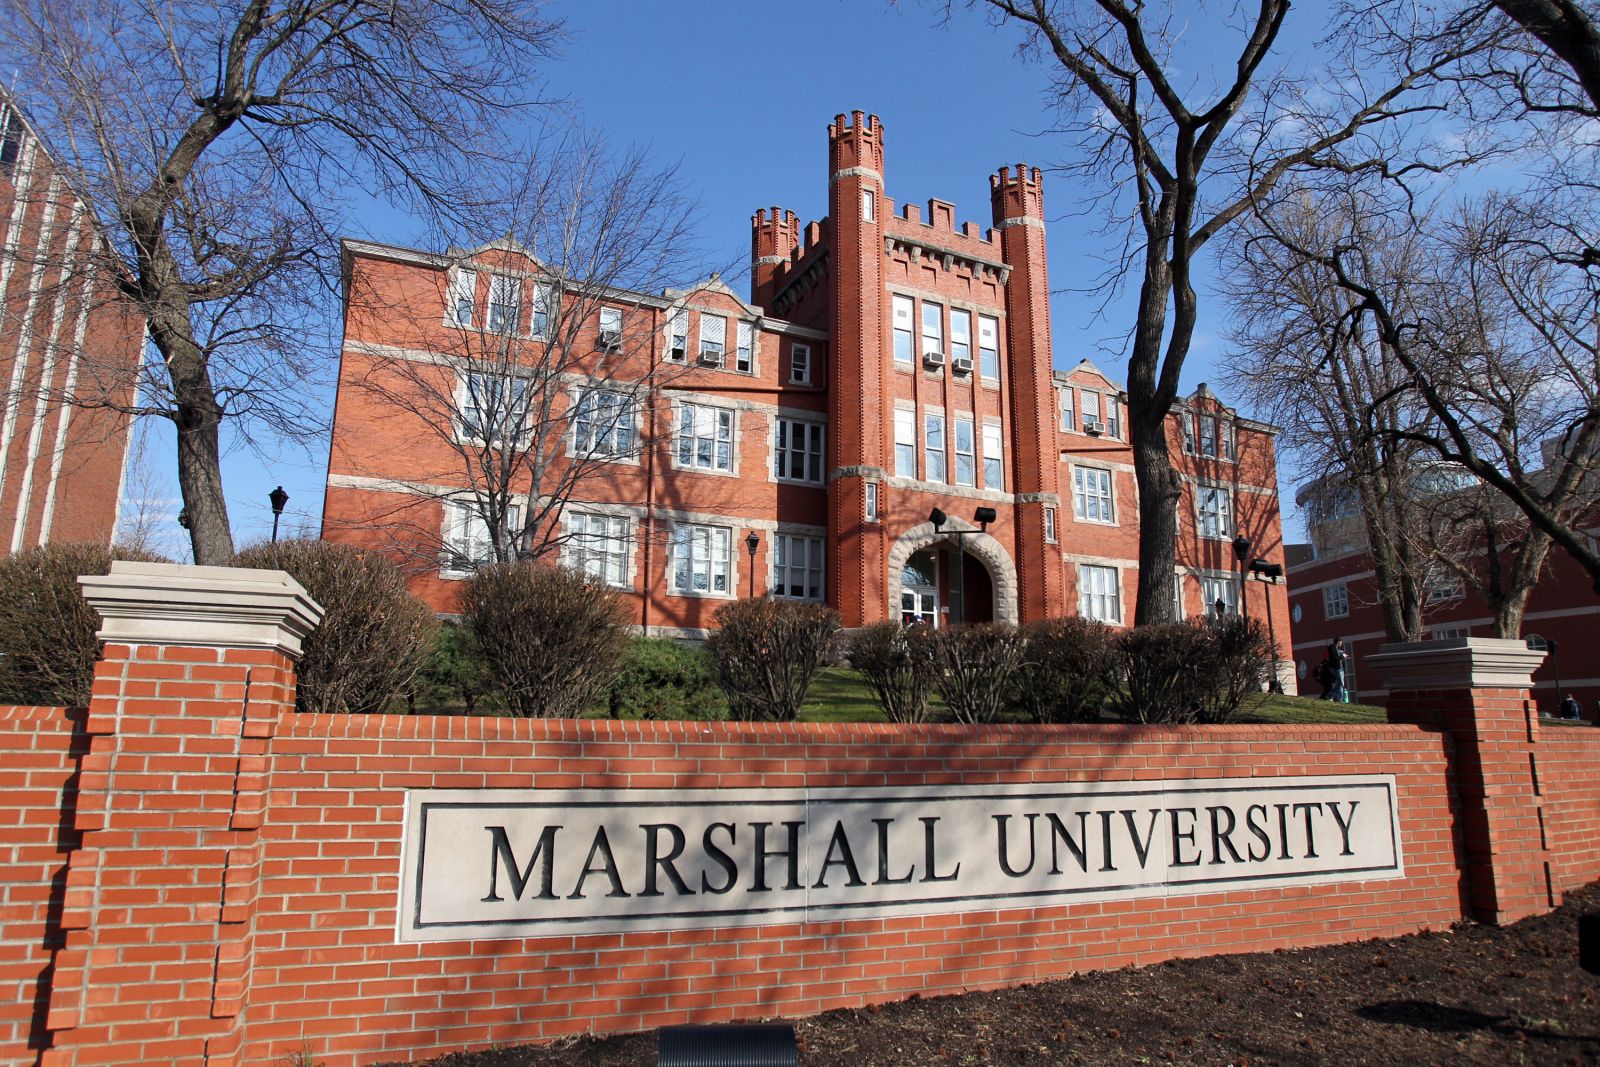 Thay đổi yêu cầu về TOEFL khi đăng ký vào Marshall University, Mỹ